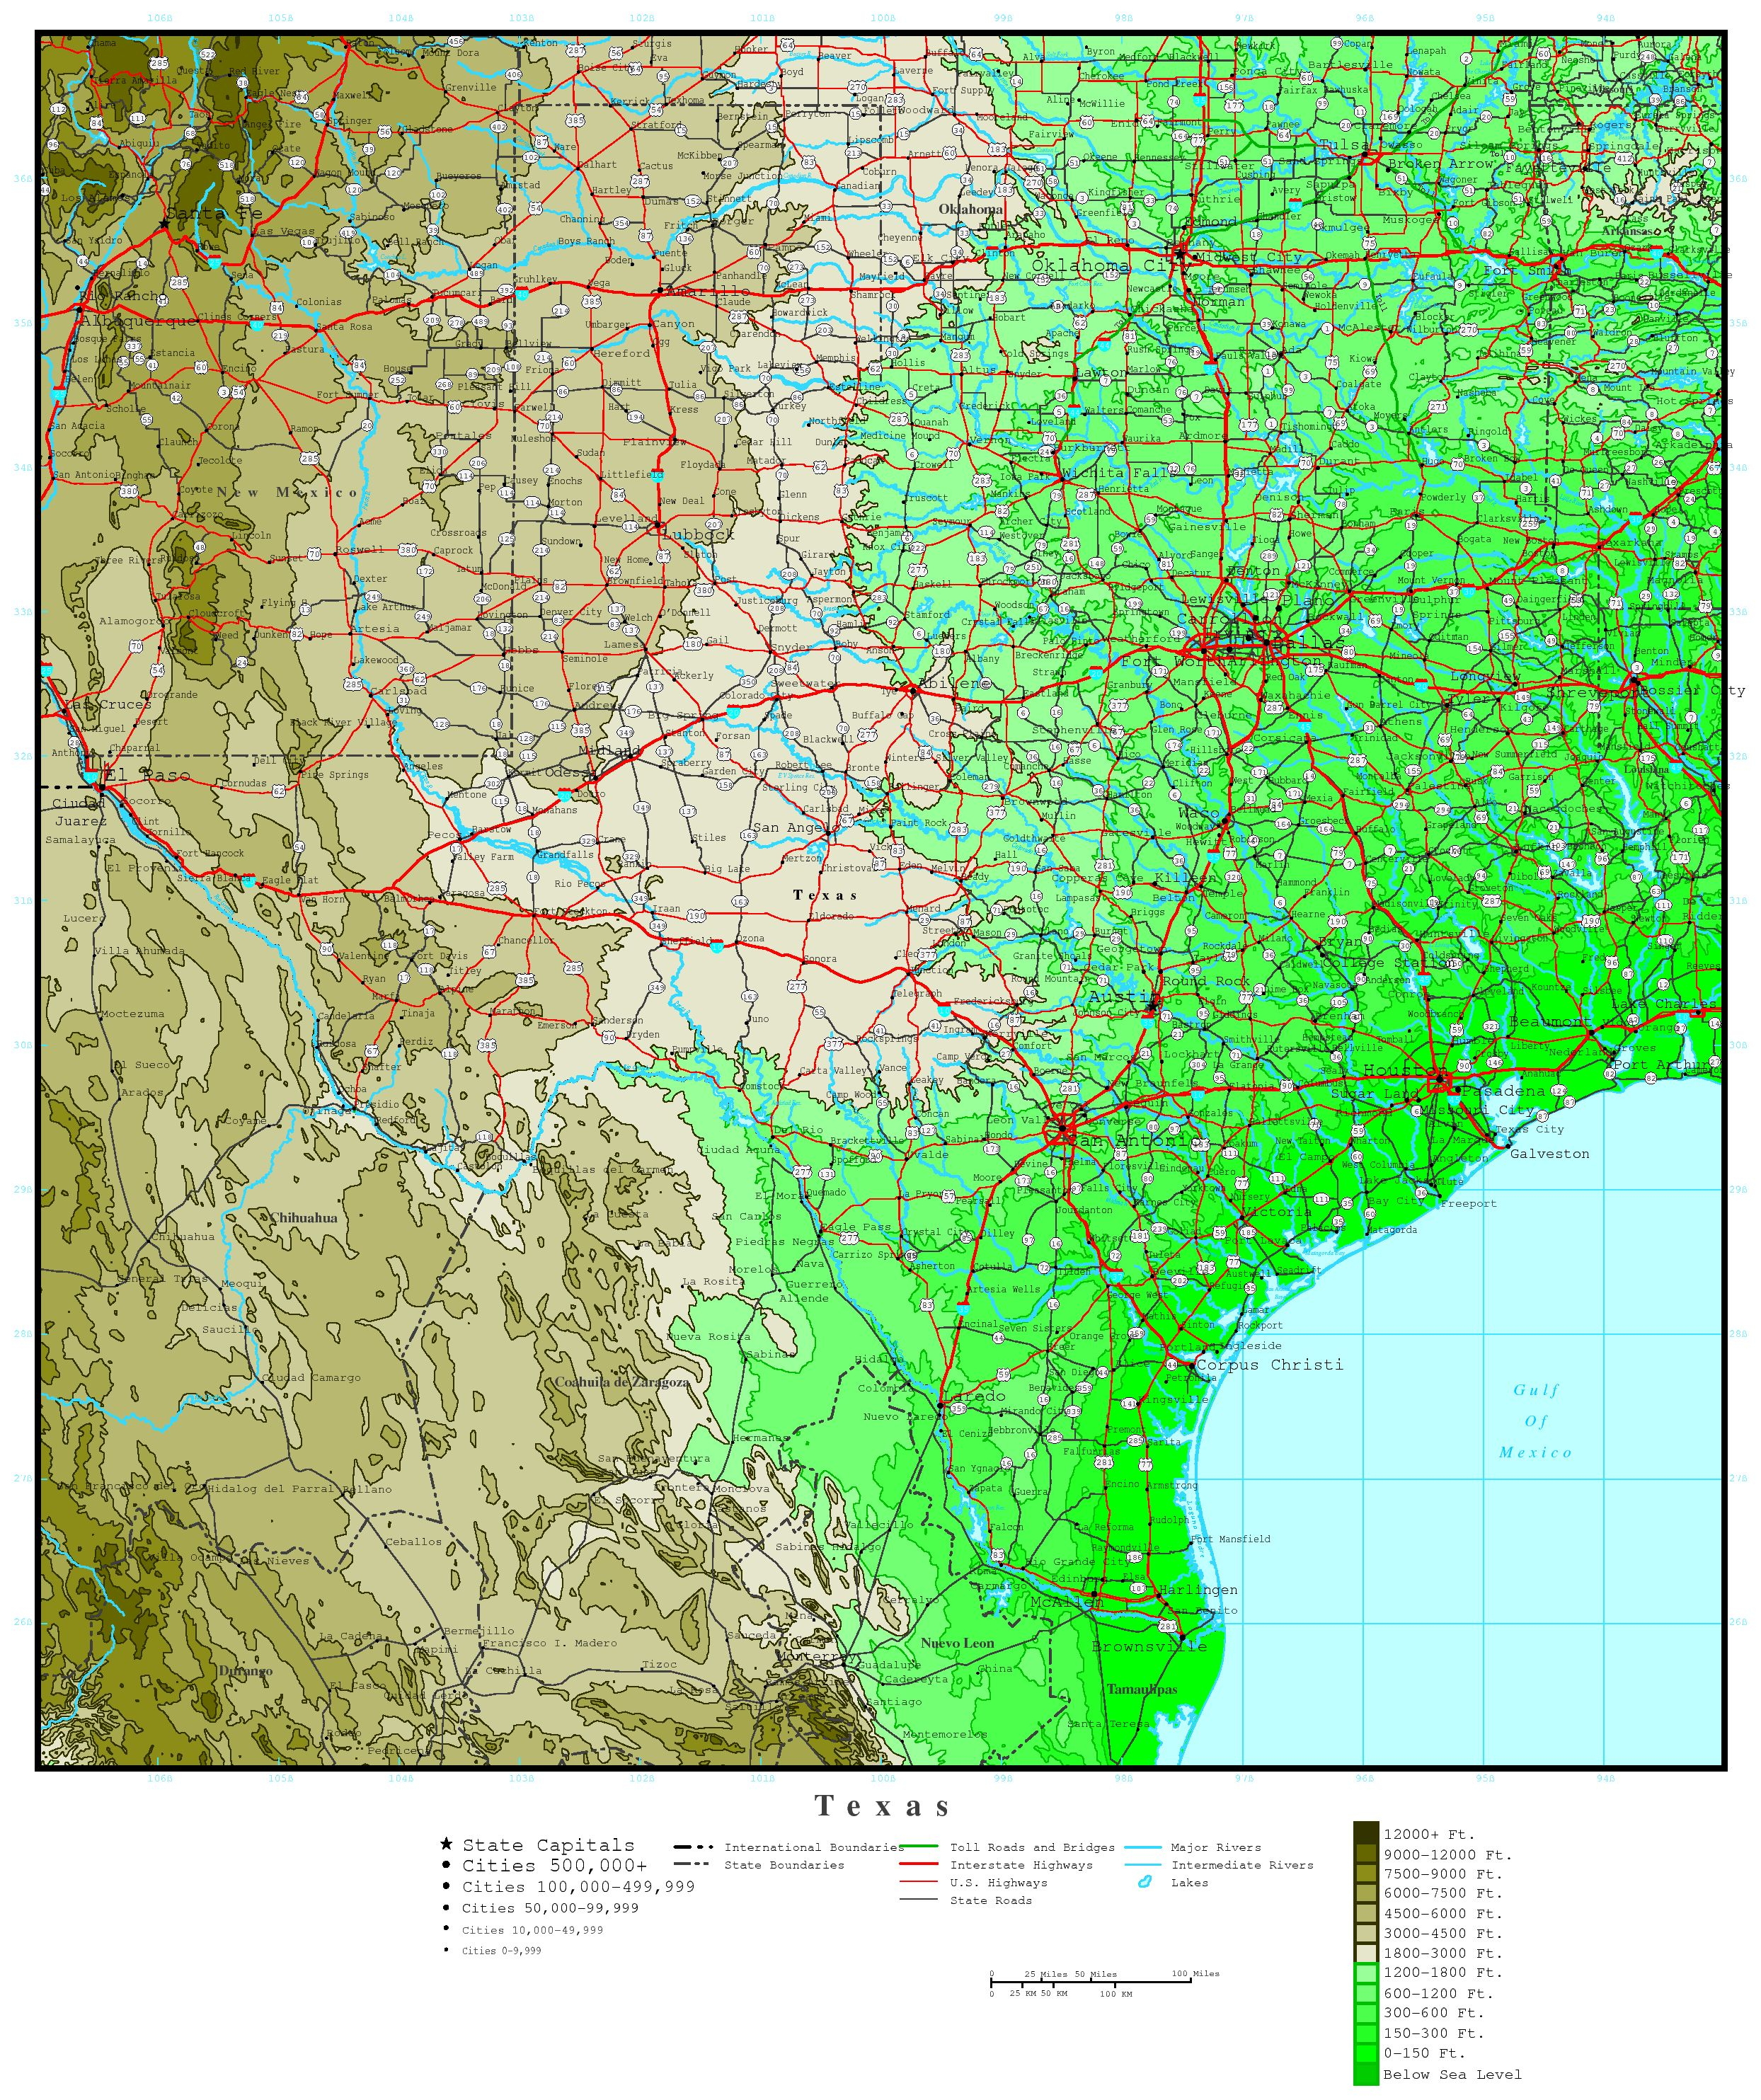 Texas Elevation Map - Texas Elevation Map